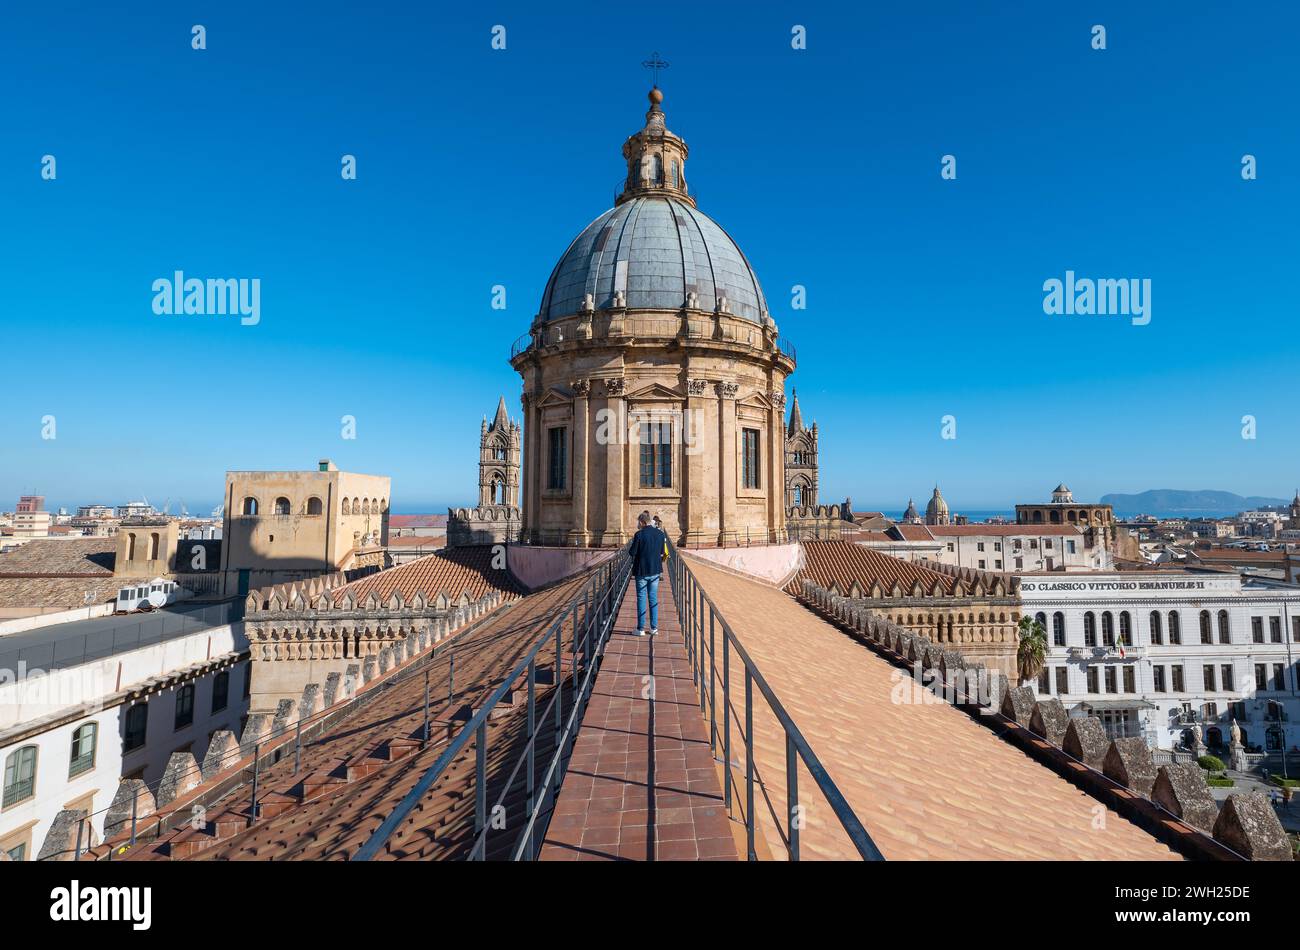 Una magnifica cattedrale di Palermo incastonata nelle affascinanti strade di palermo, in sicilia, vanta architettura classica e una maestosa torre, ov Foto Stock